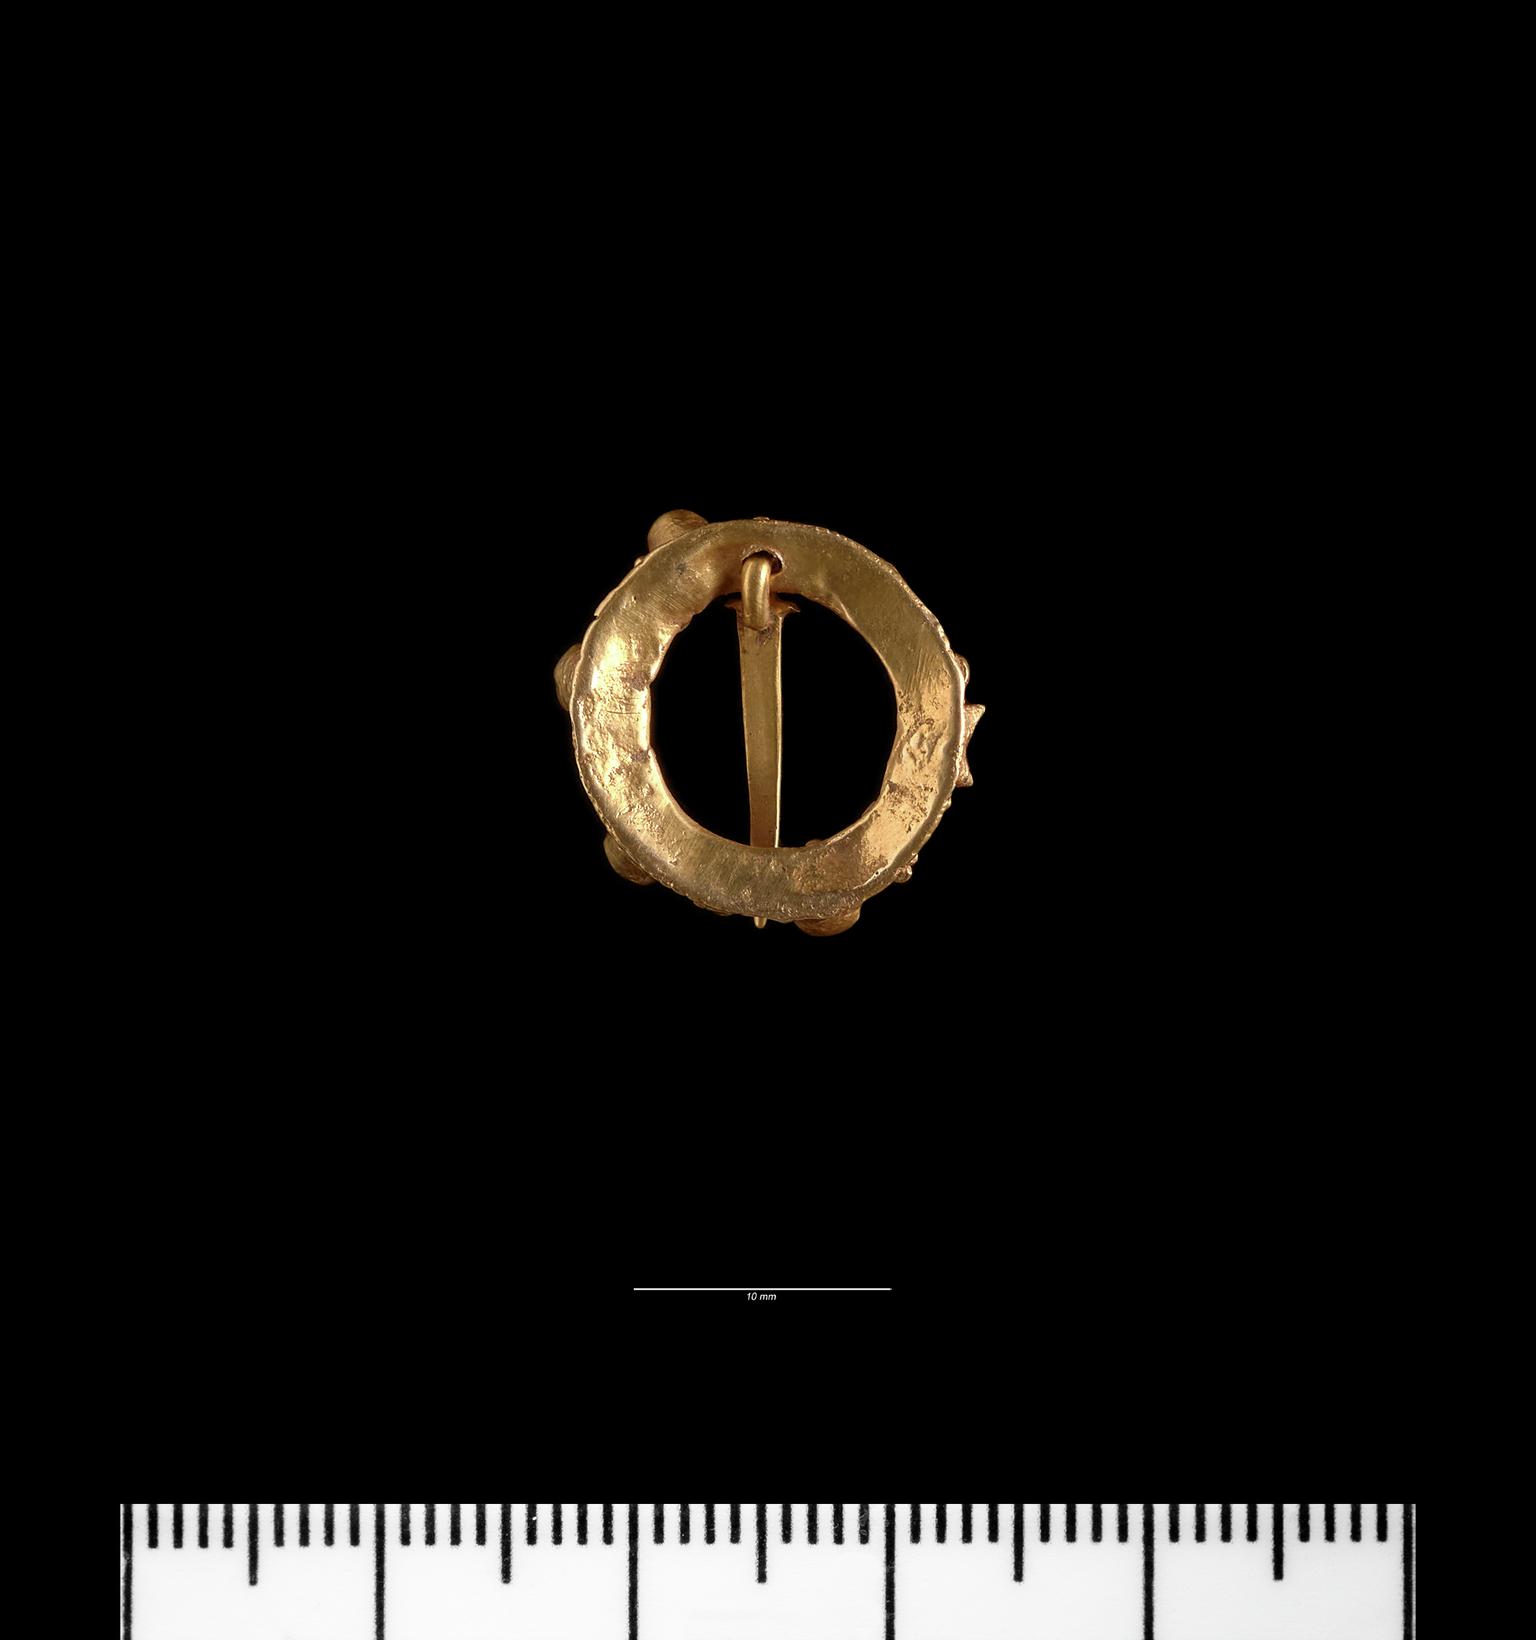 Medieval gold annular brooch